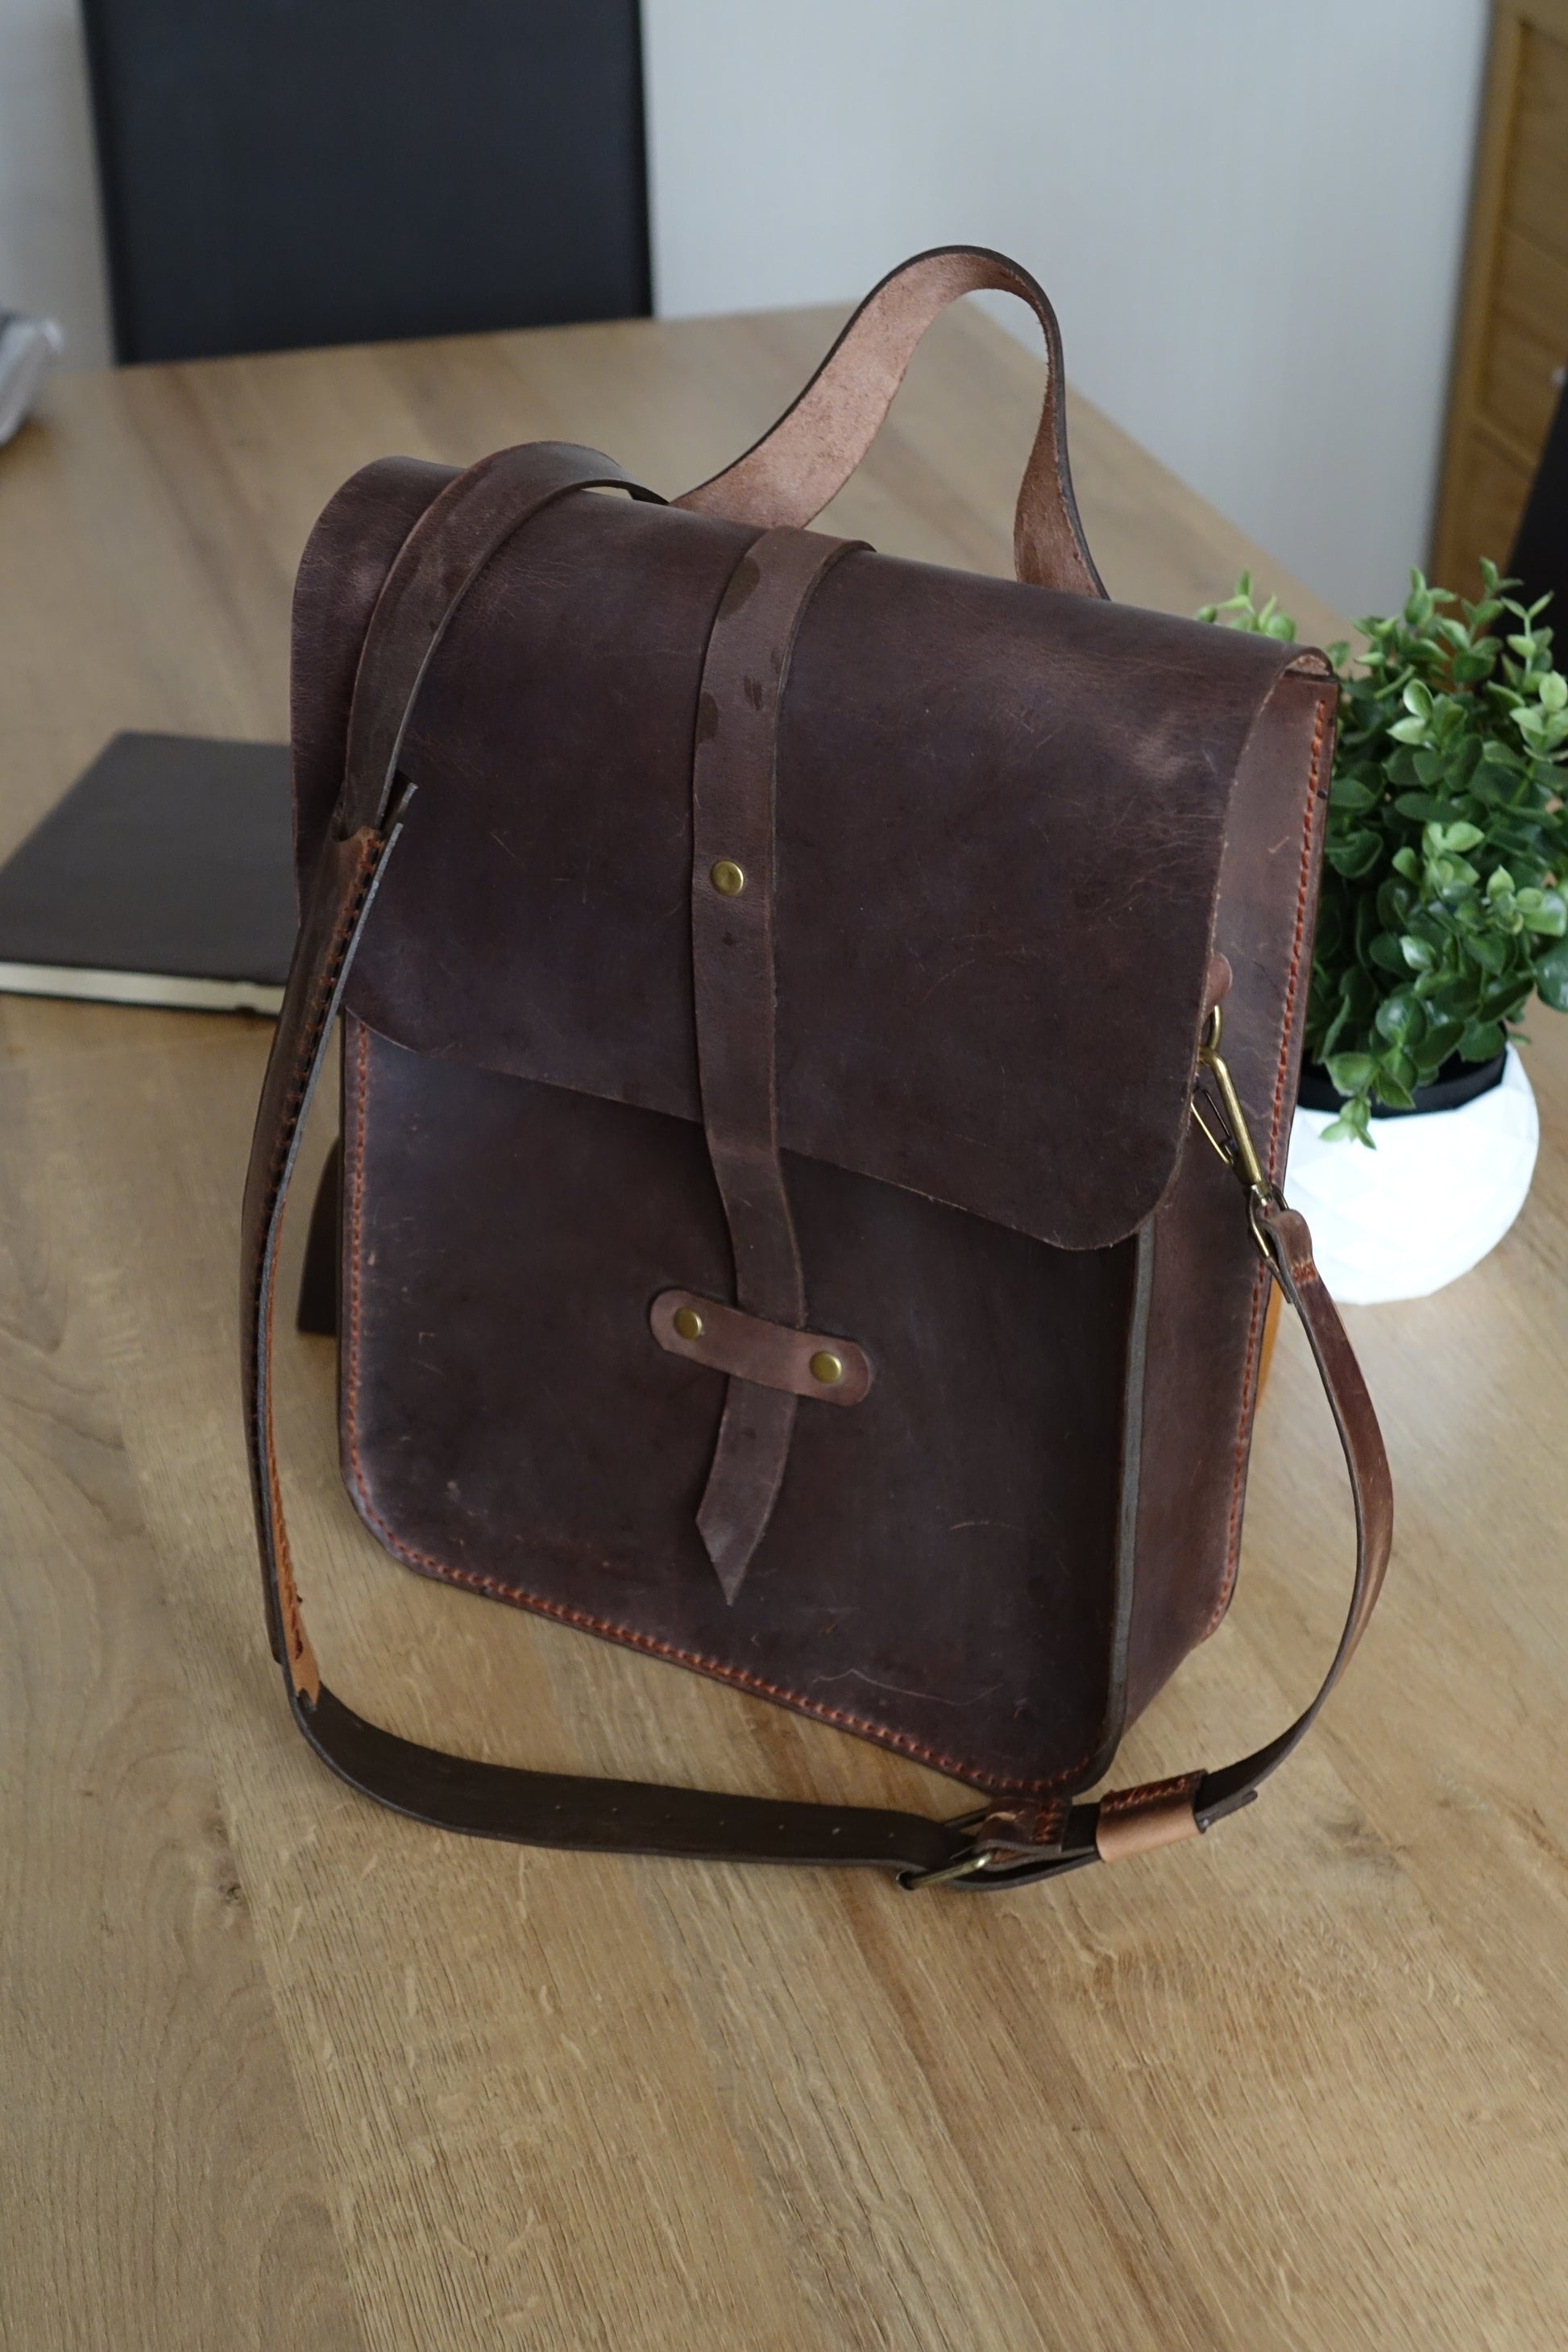 Full Grain Leather Messenger Bag Mens Leather Shoulder Bag Vintage